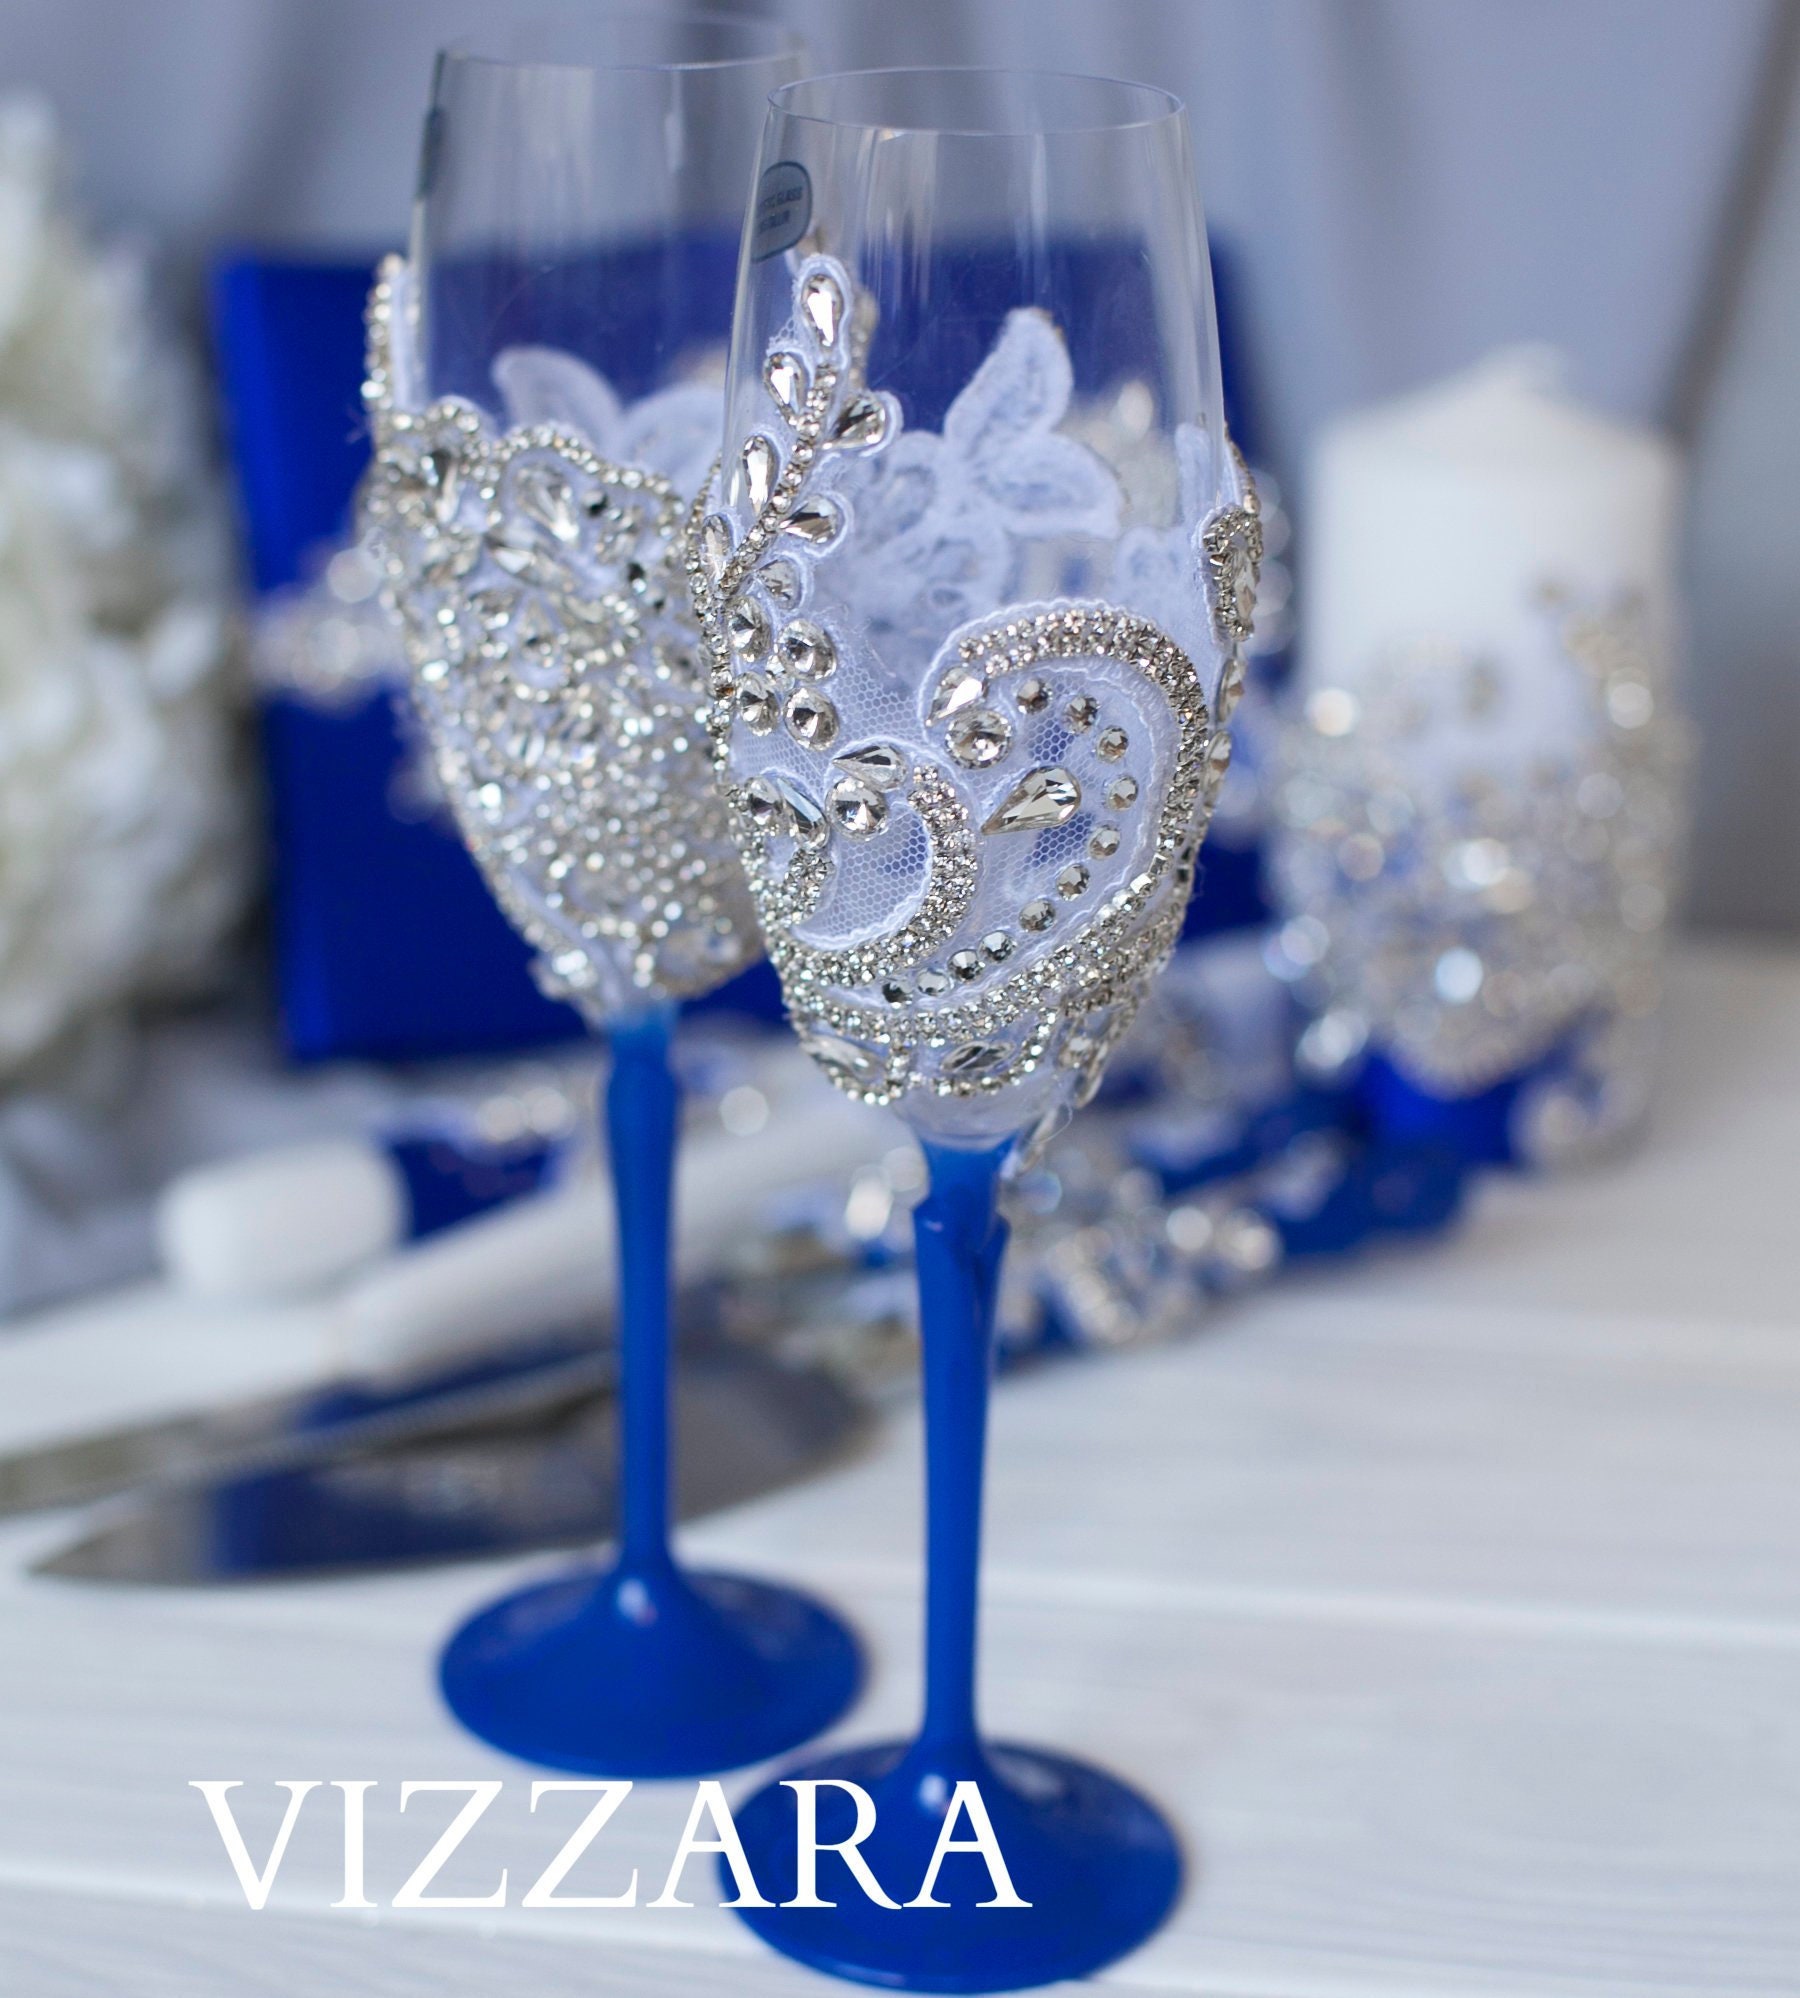 Champagne flute Royal blue wedding Royal blue wedding ideas | Etsy